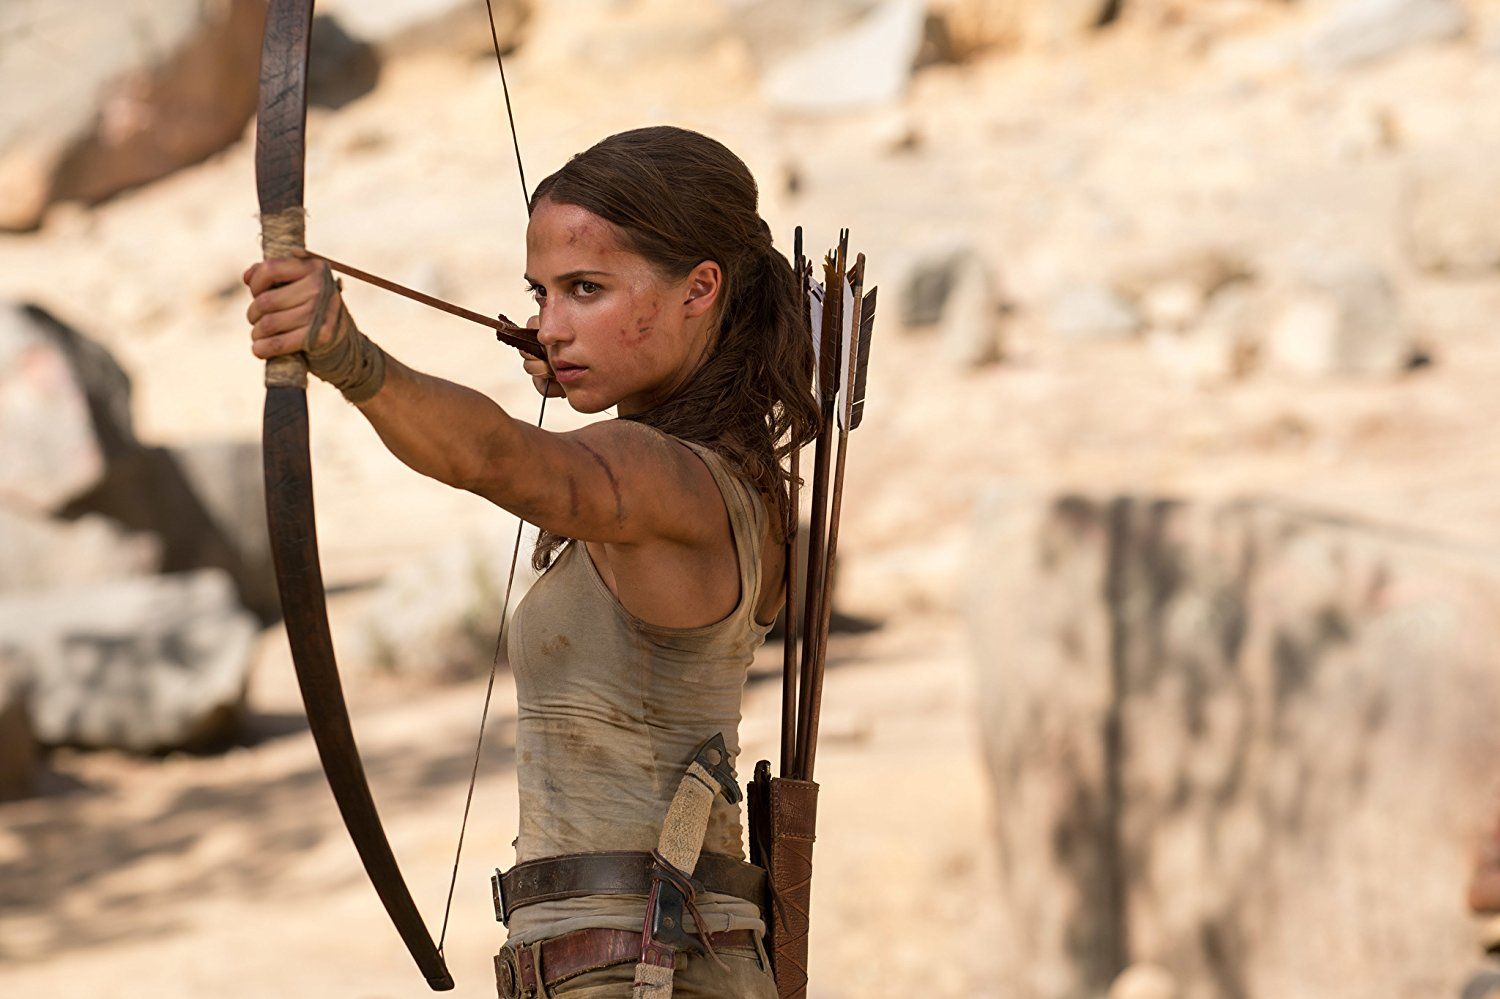 Lara Croft bisa menjadi tokoh heroik wanita yang menginspirasi